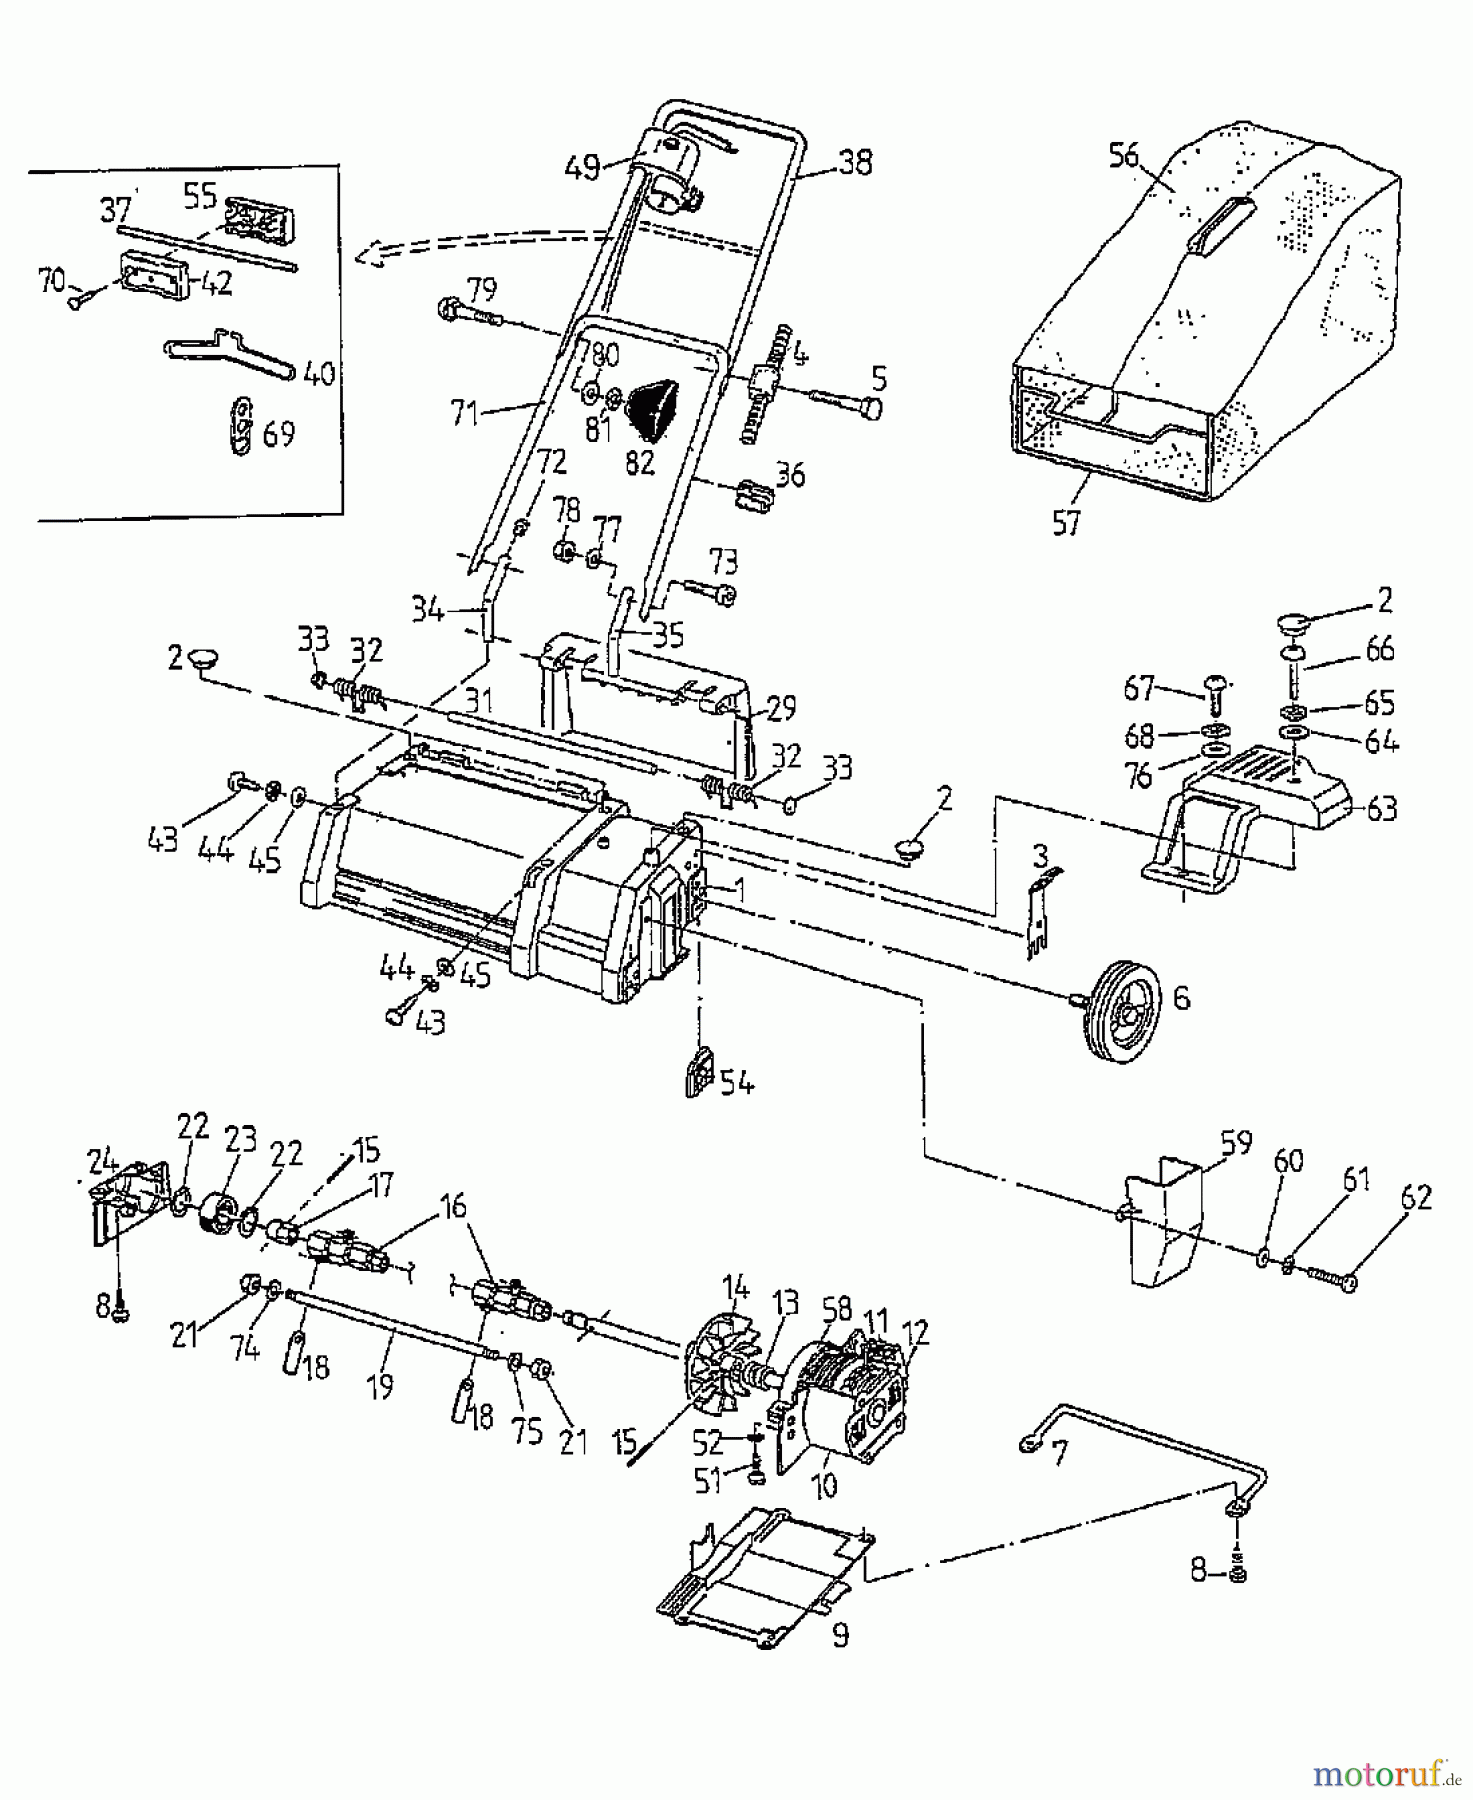  Gutbrod Scarificateur électrique VE 33 04053.05  (1997) Machine de base